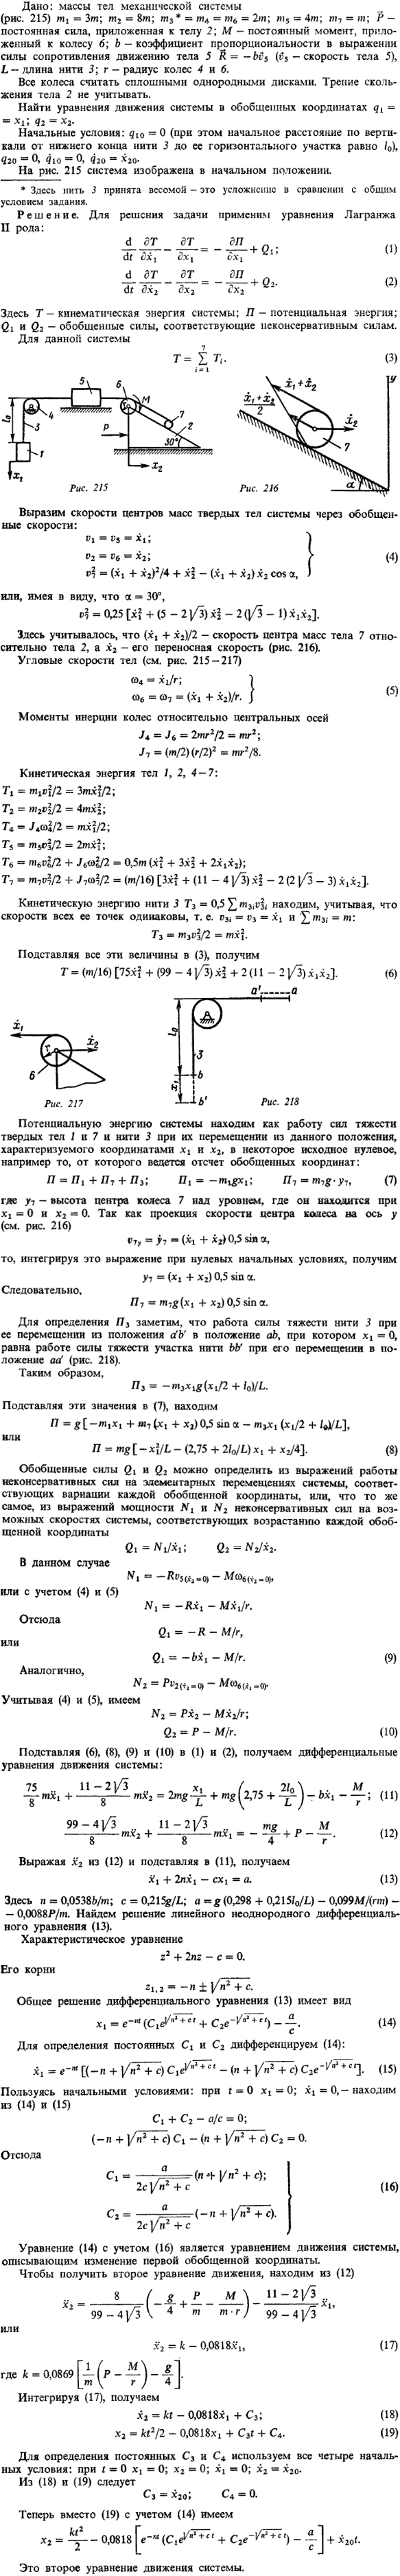 Массы тел механической системы m1 = 3m; m2 = 8m; m3 * = m4 = m6 = 2m; m5 = 4m; m7 = m; P постоянная сила, приложенная к телу 2; M - постоянный момент, приложенный к колесу 6; b коэффициент пропорциональности в выражении силы сопр..., Задача 15219, Теоретическая механика